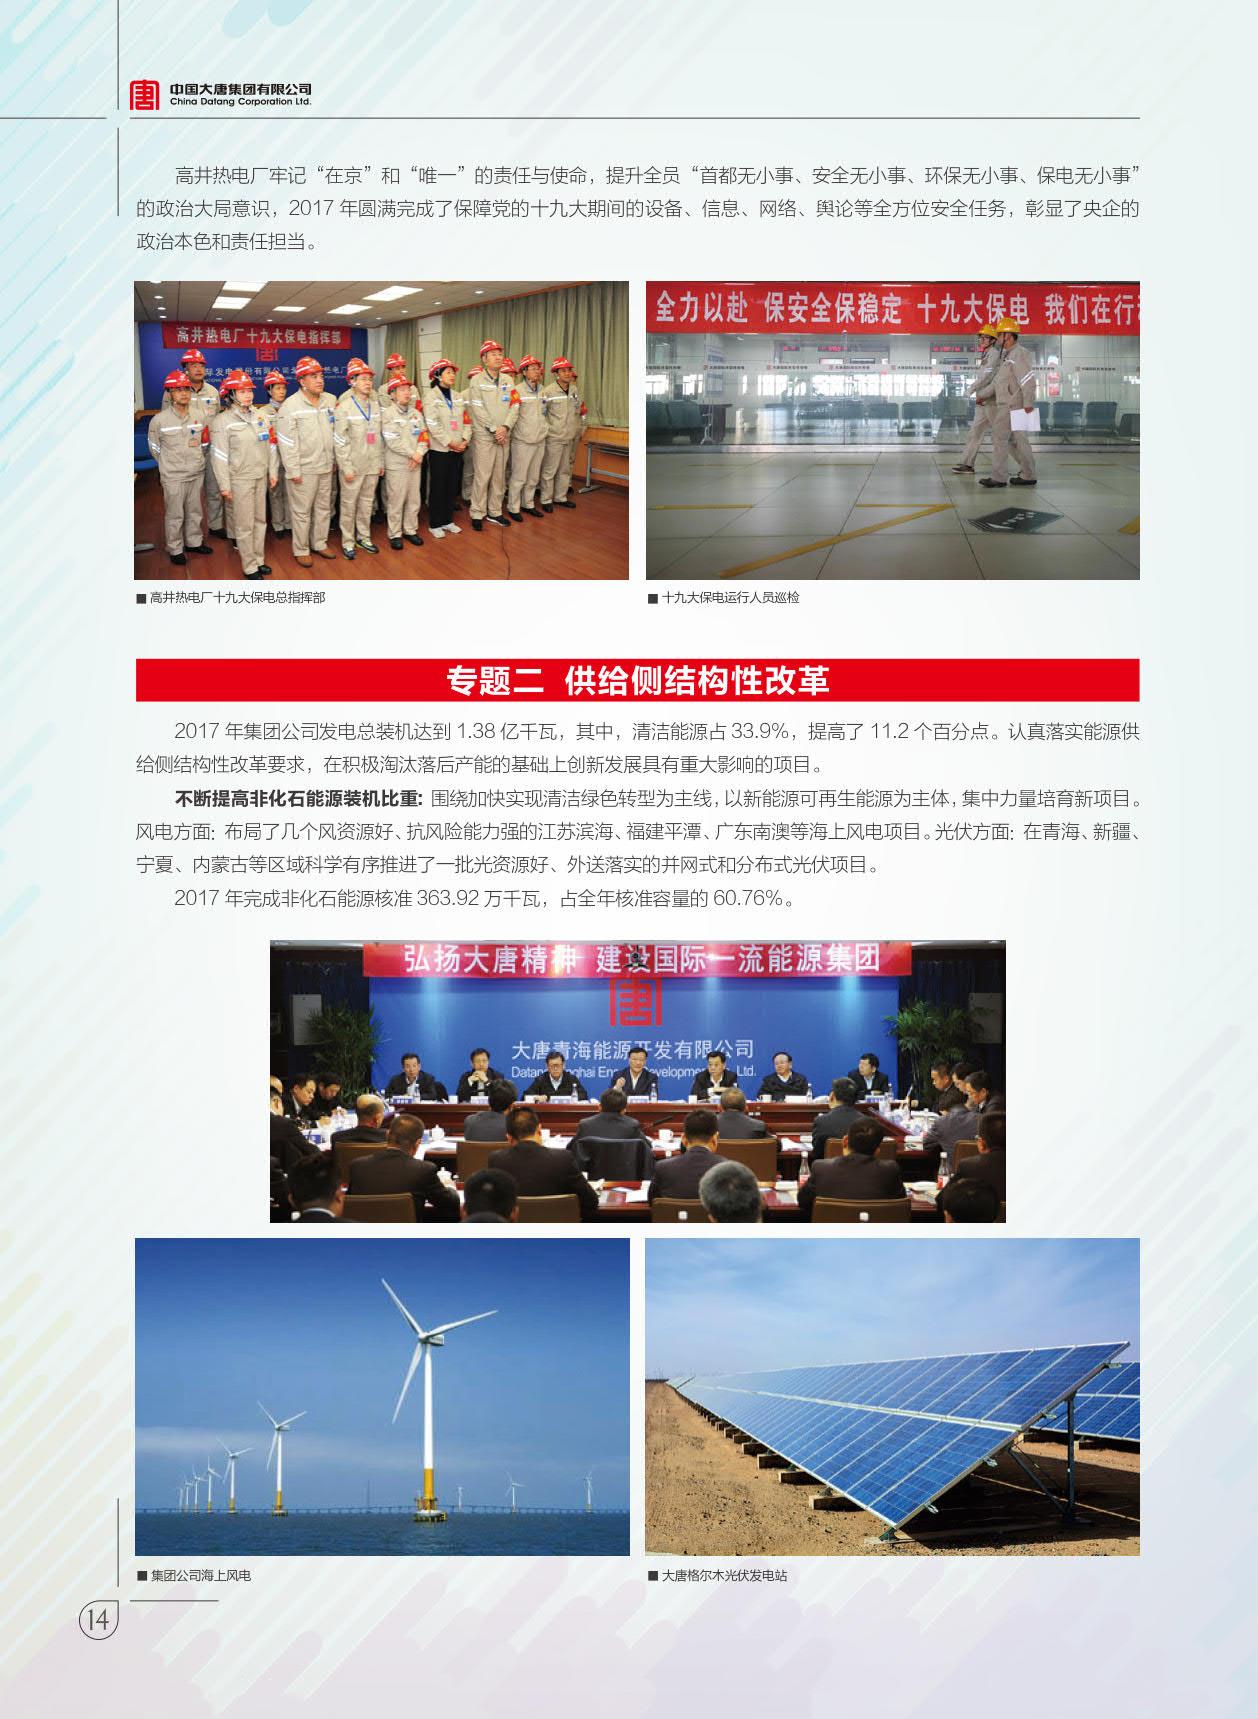 【全文】大唐集团发布2017年社会责任报：风电利润23.98亿元